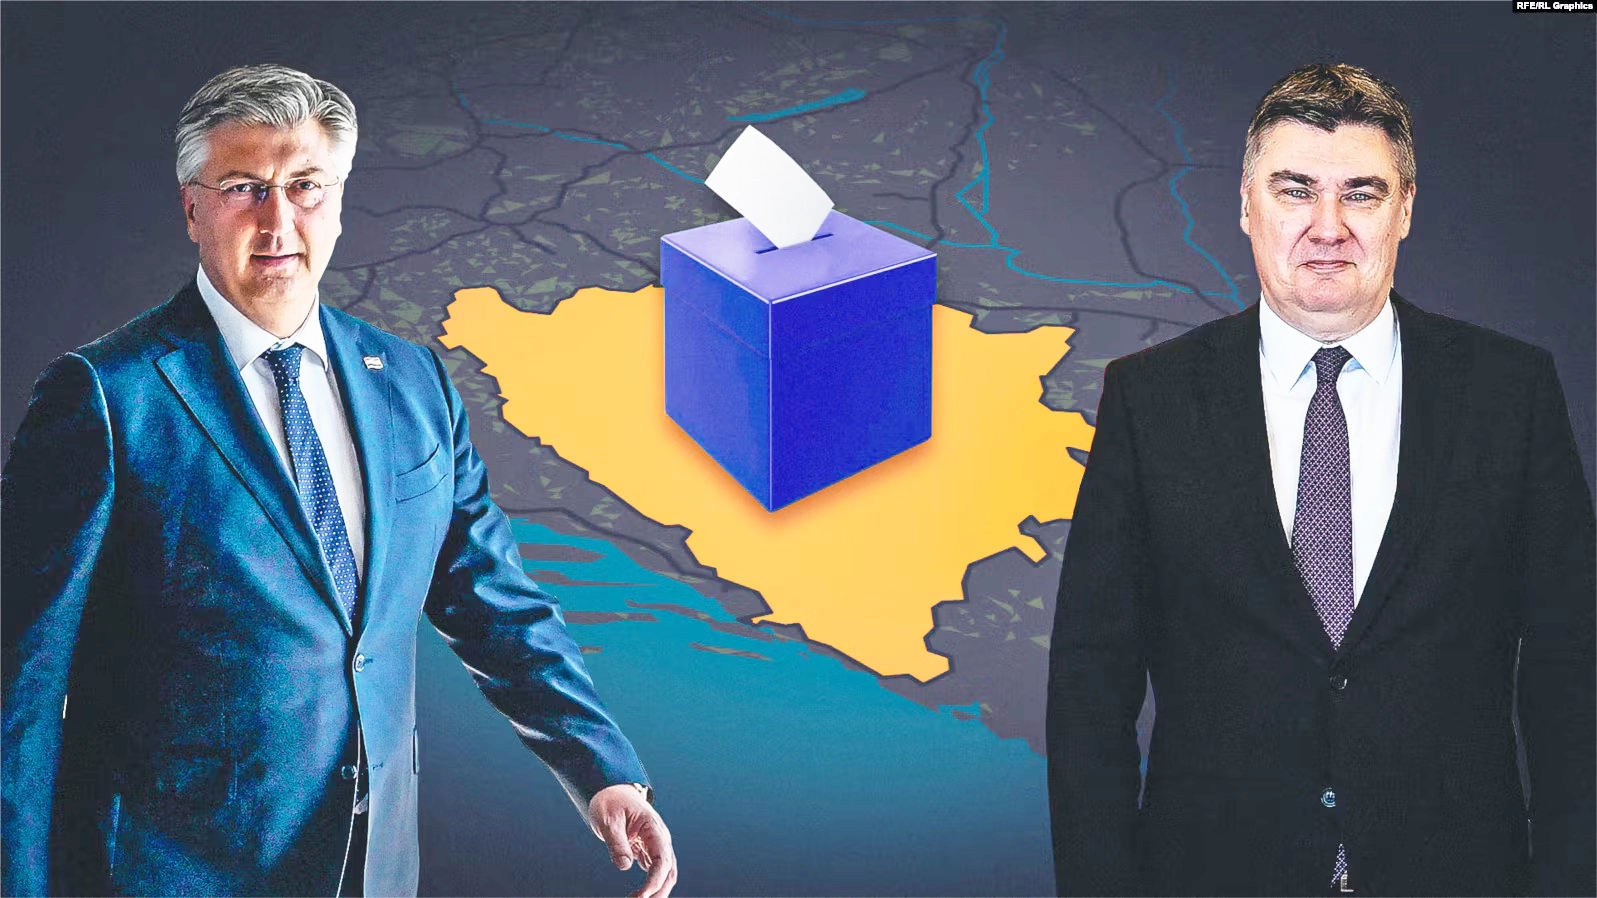 Za hrvatske izbore u iseljeništvu aktivno registrirano 222.300 osoba, najviše ih je u Mostaru